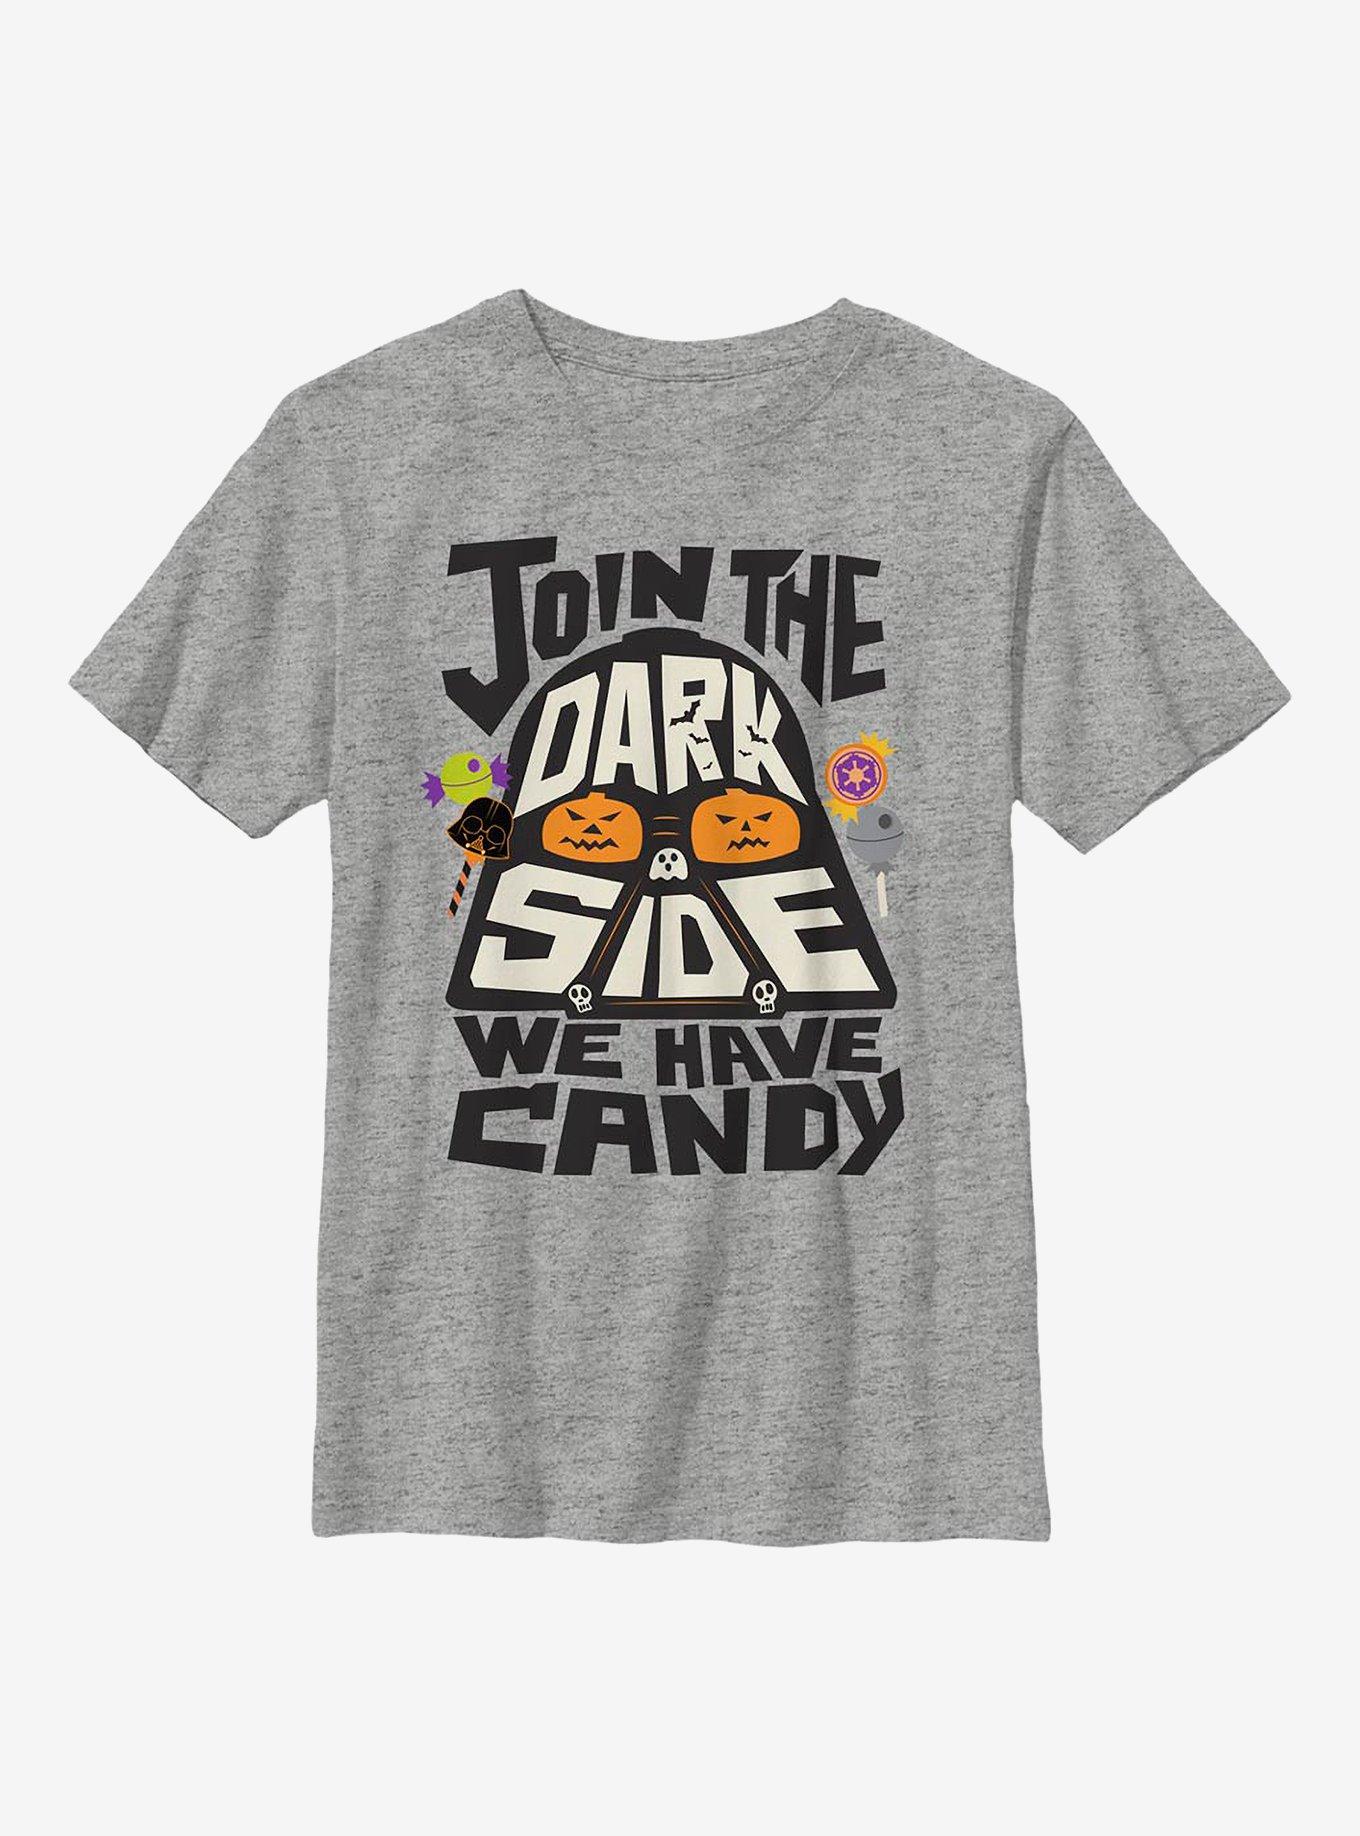 Star Wars Candy Vader Youth T-Shirt, , hi-res